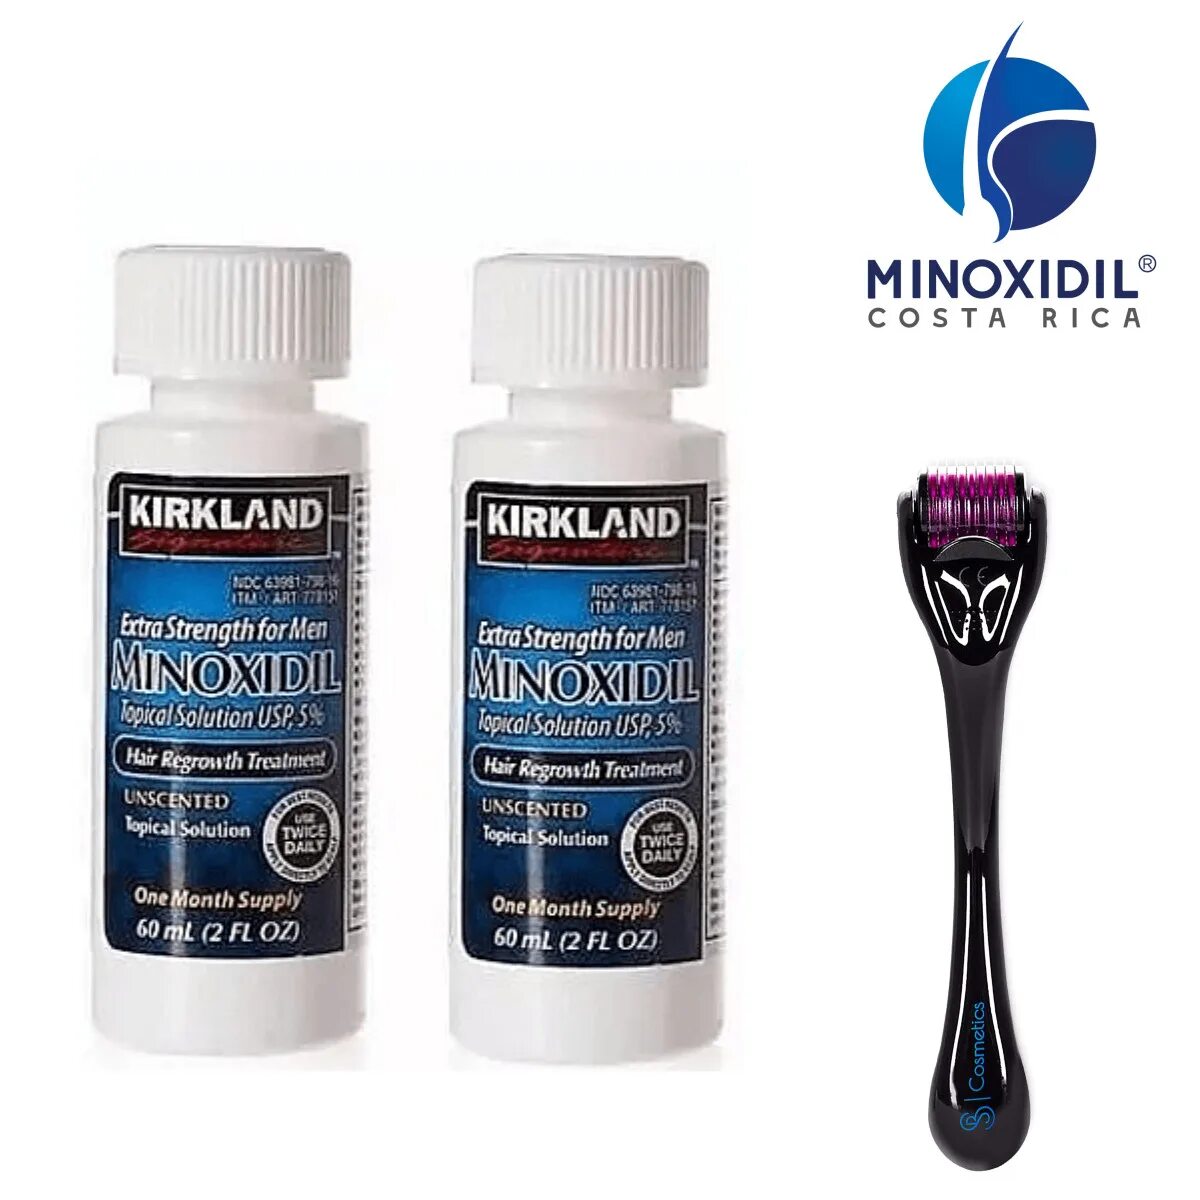 Minoxidil купить